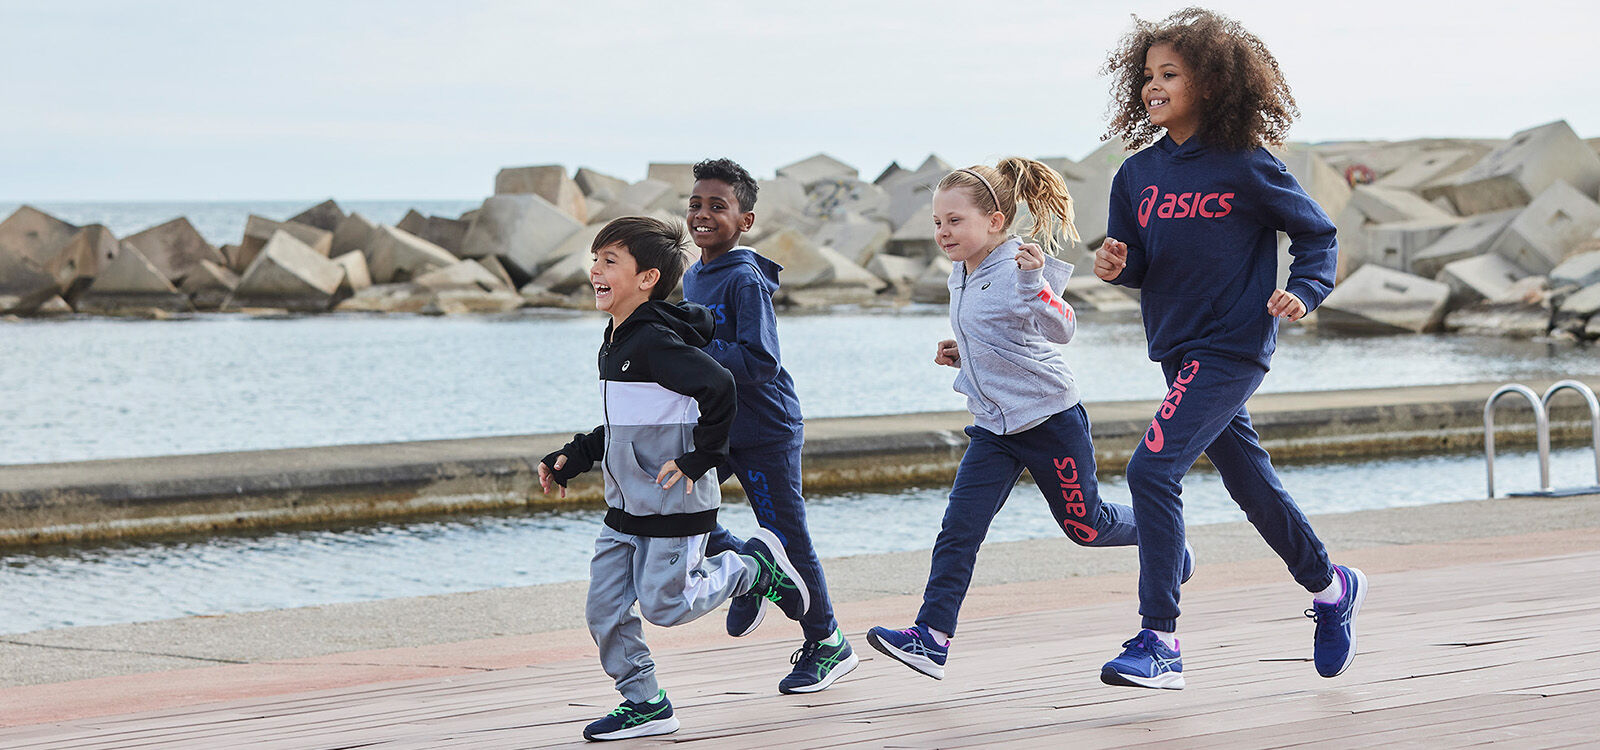 Le running comme sport pour enfant | ASICS BE